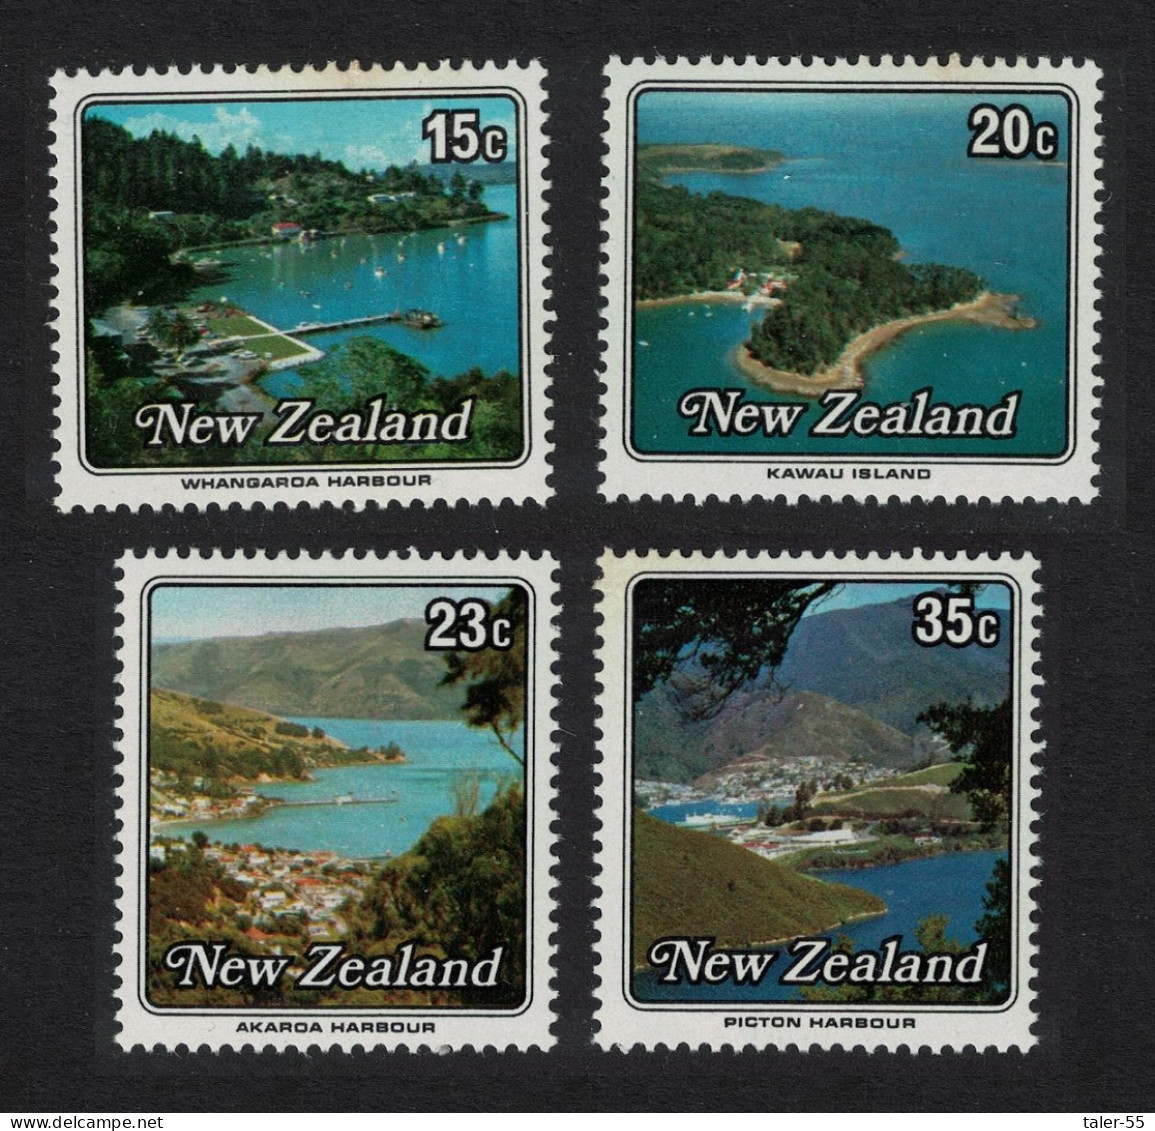 New Zealand Small Harbours 4v 1979 MNH SG#1192-1195 - Ongebruikt